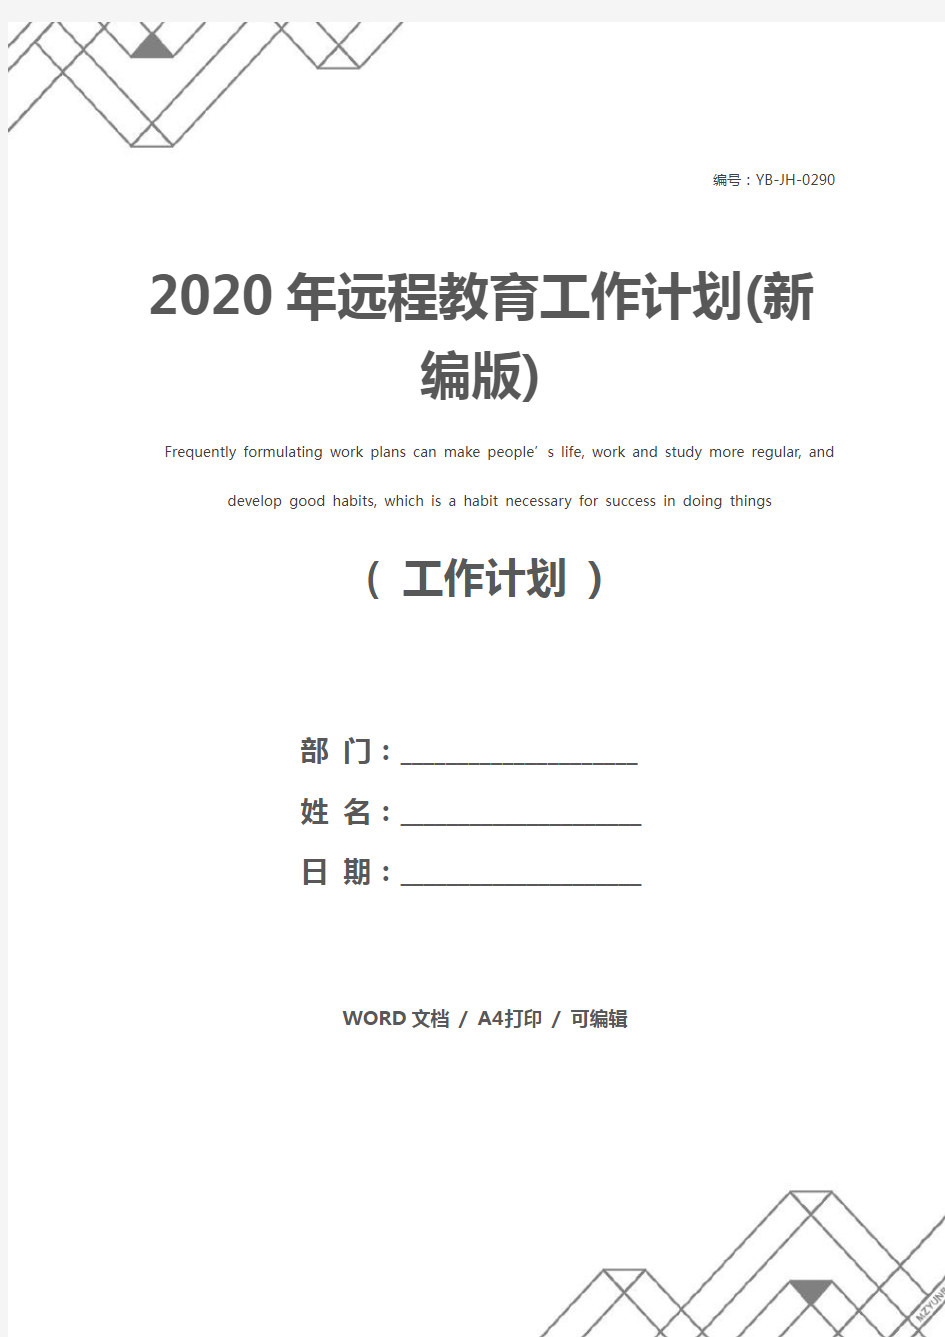 2020年远程教育工作计划(新编版)